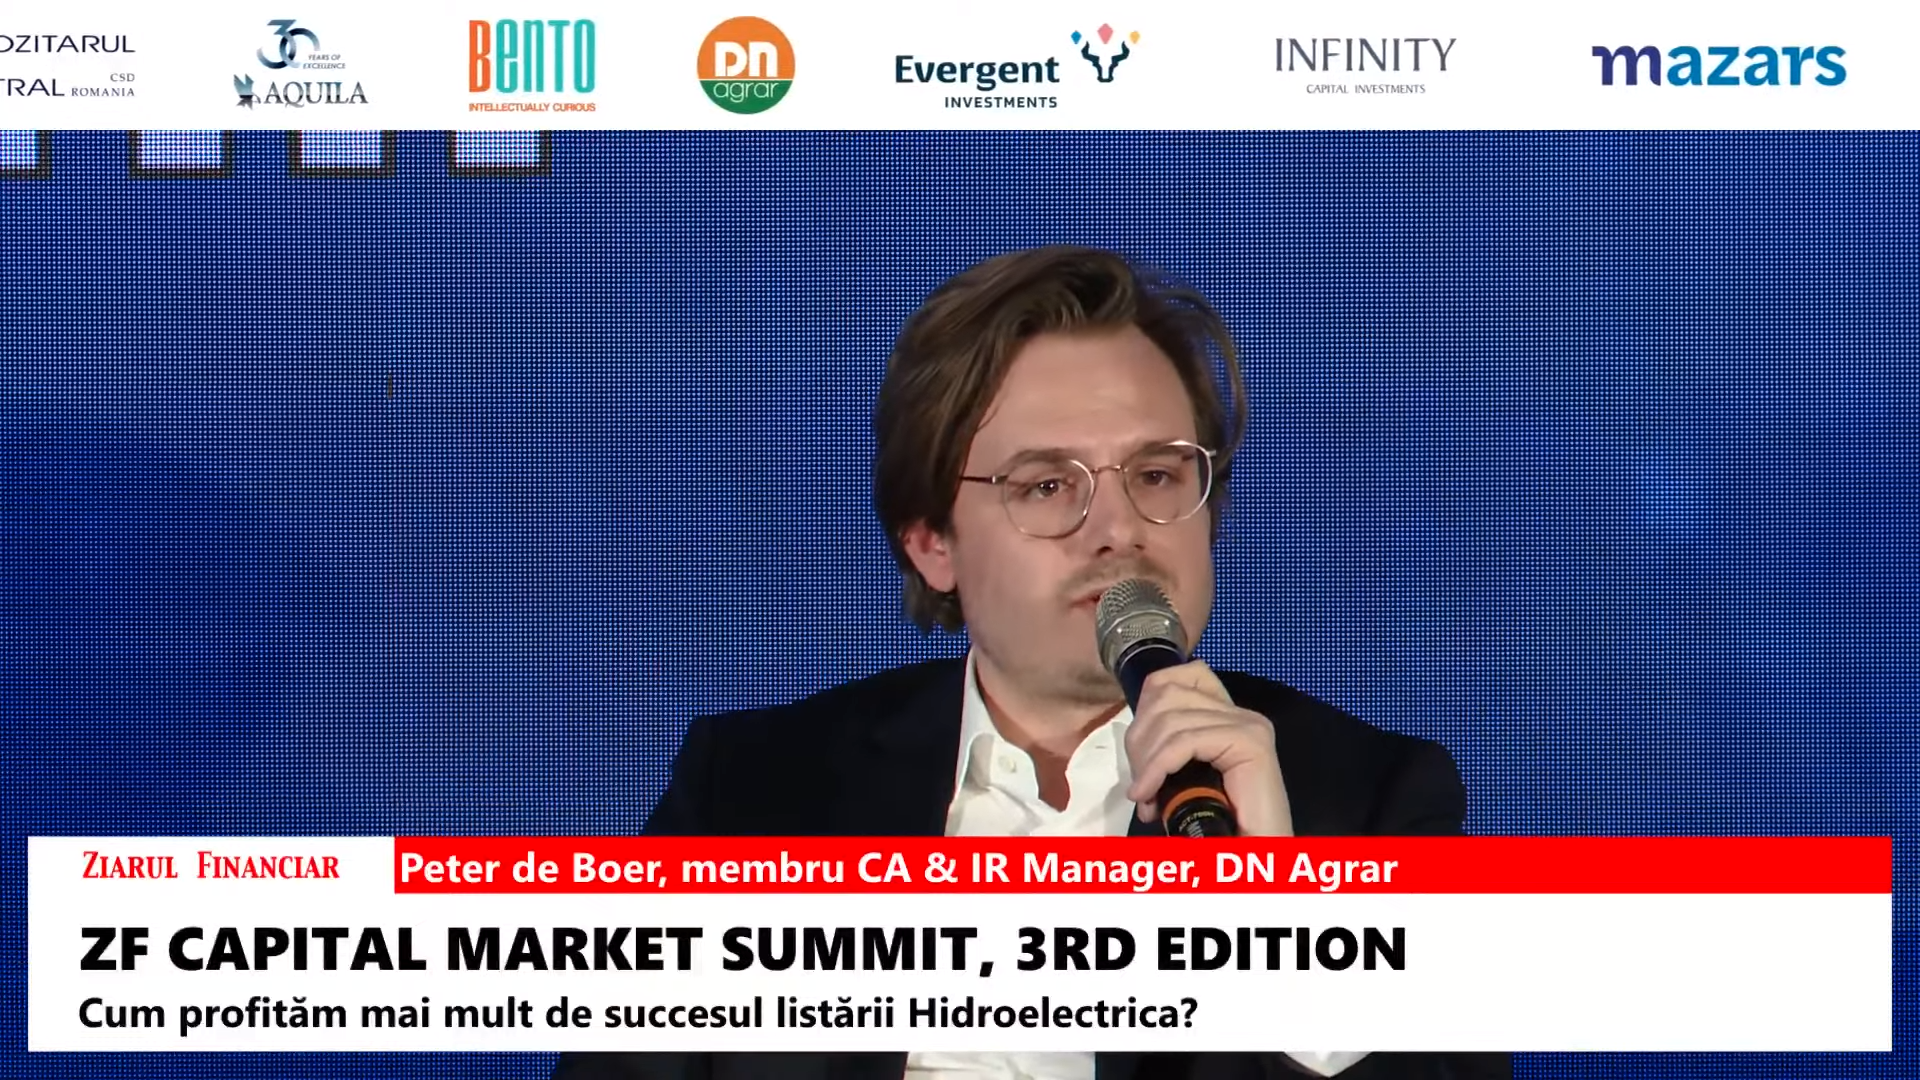 Peter de Boer, membru CA & IR Manager, DN Agrar: Nu ne gândim să trecem pe piaţa principală înainte de 2025. În acest moment compania noastră este prea mică, chiar dacă suntem foarte profesionişti